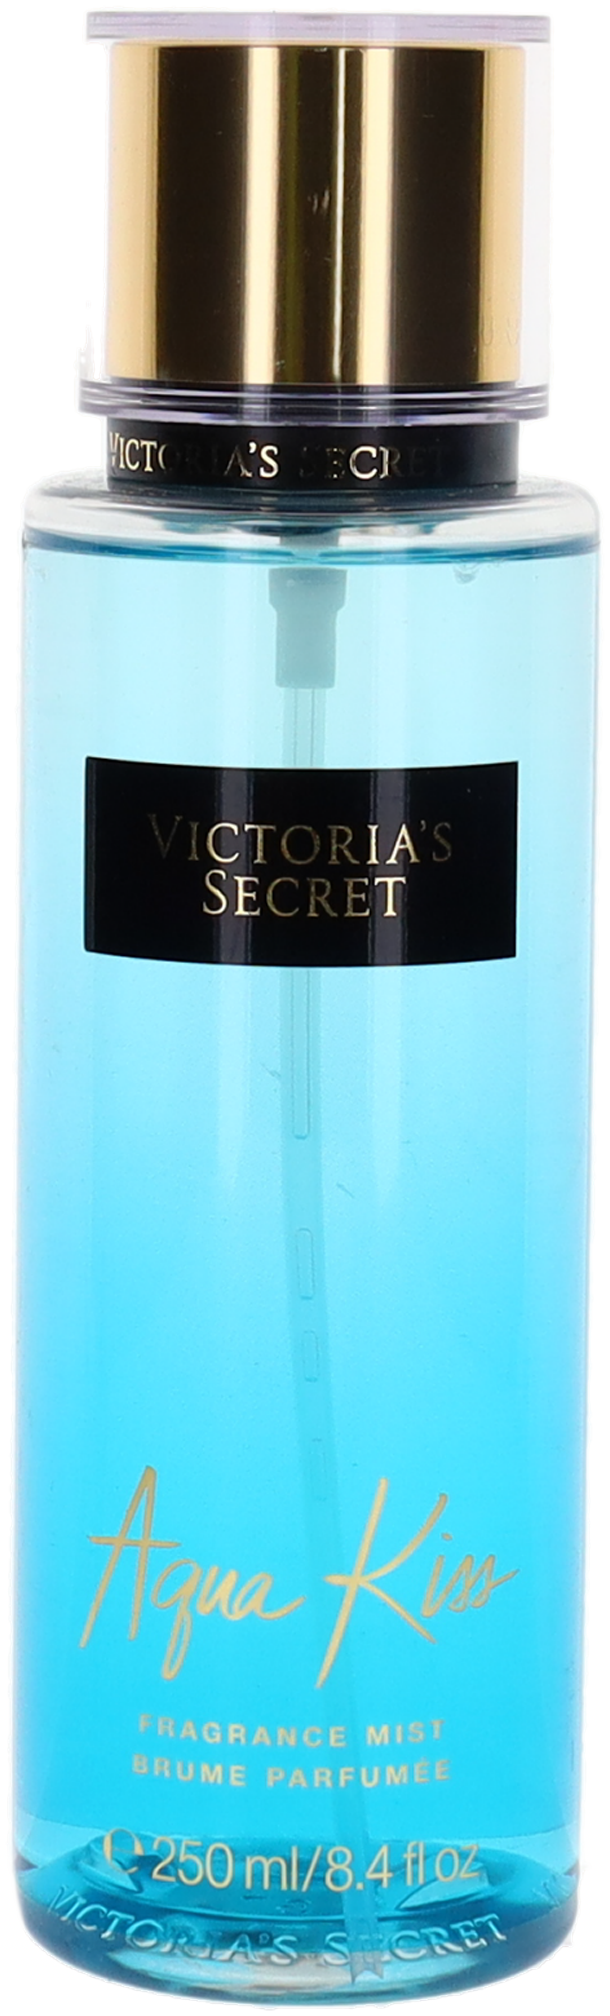 victoria's secret aqua kiss (w) body mist spray 8.4oz ub